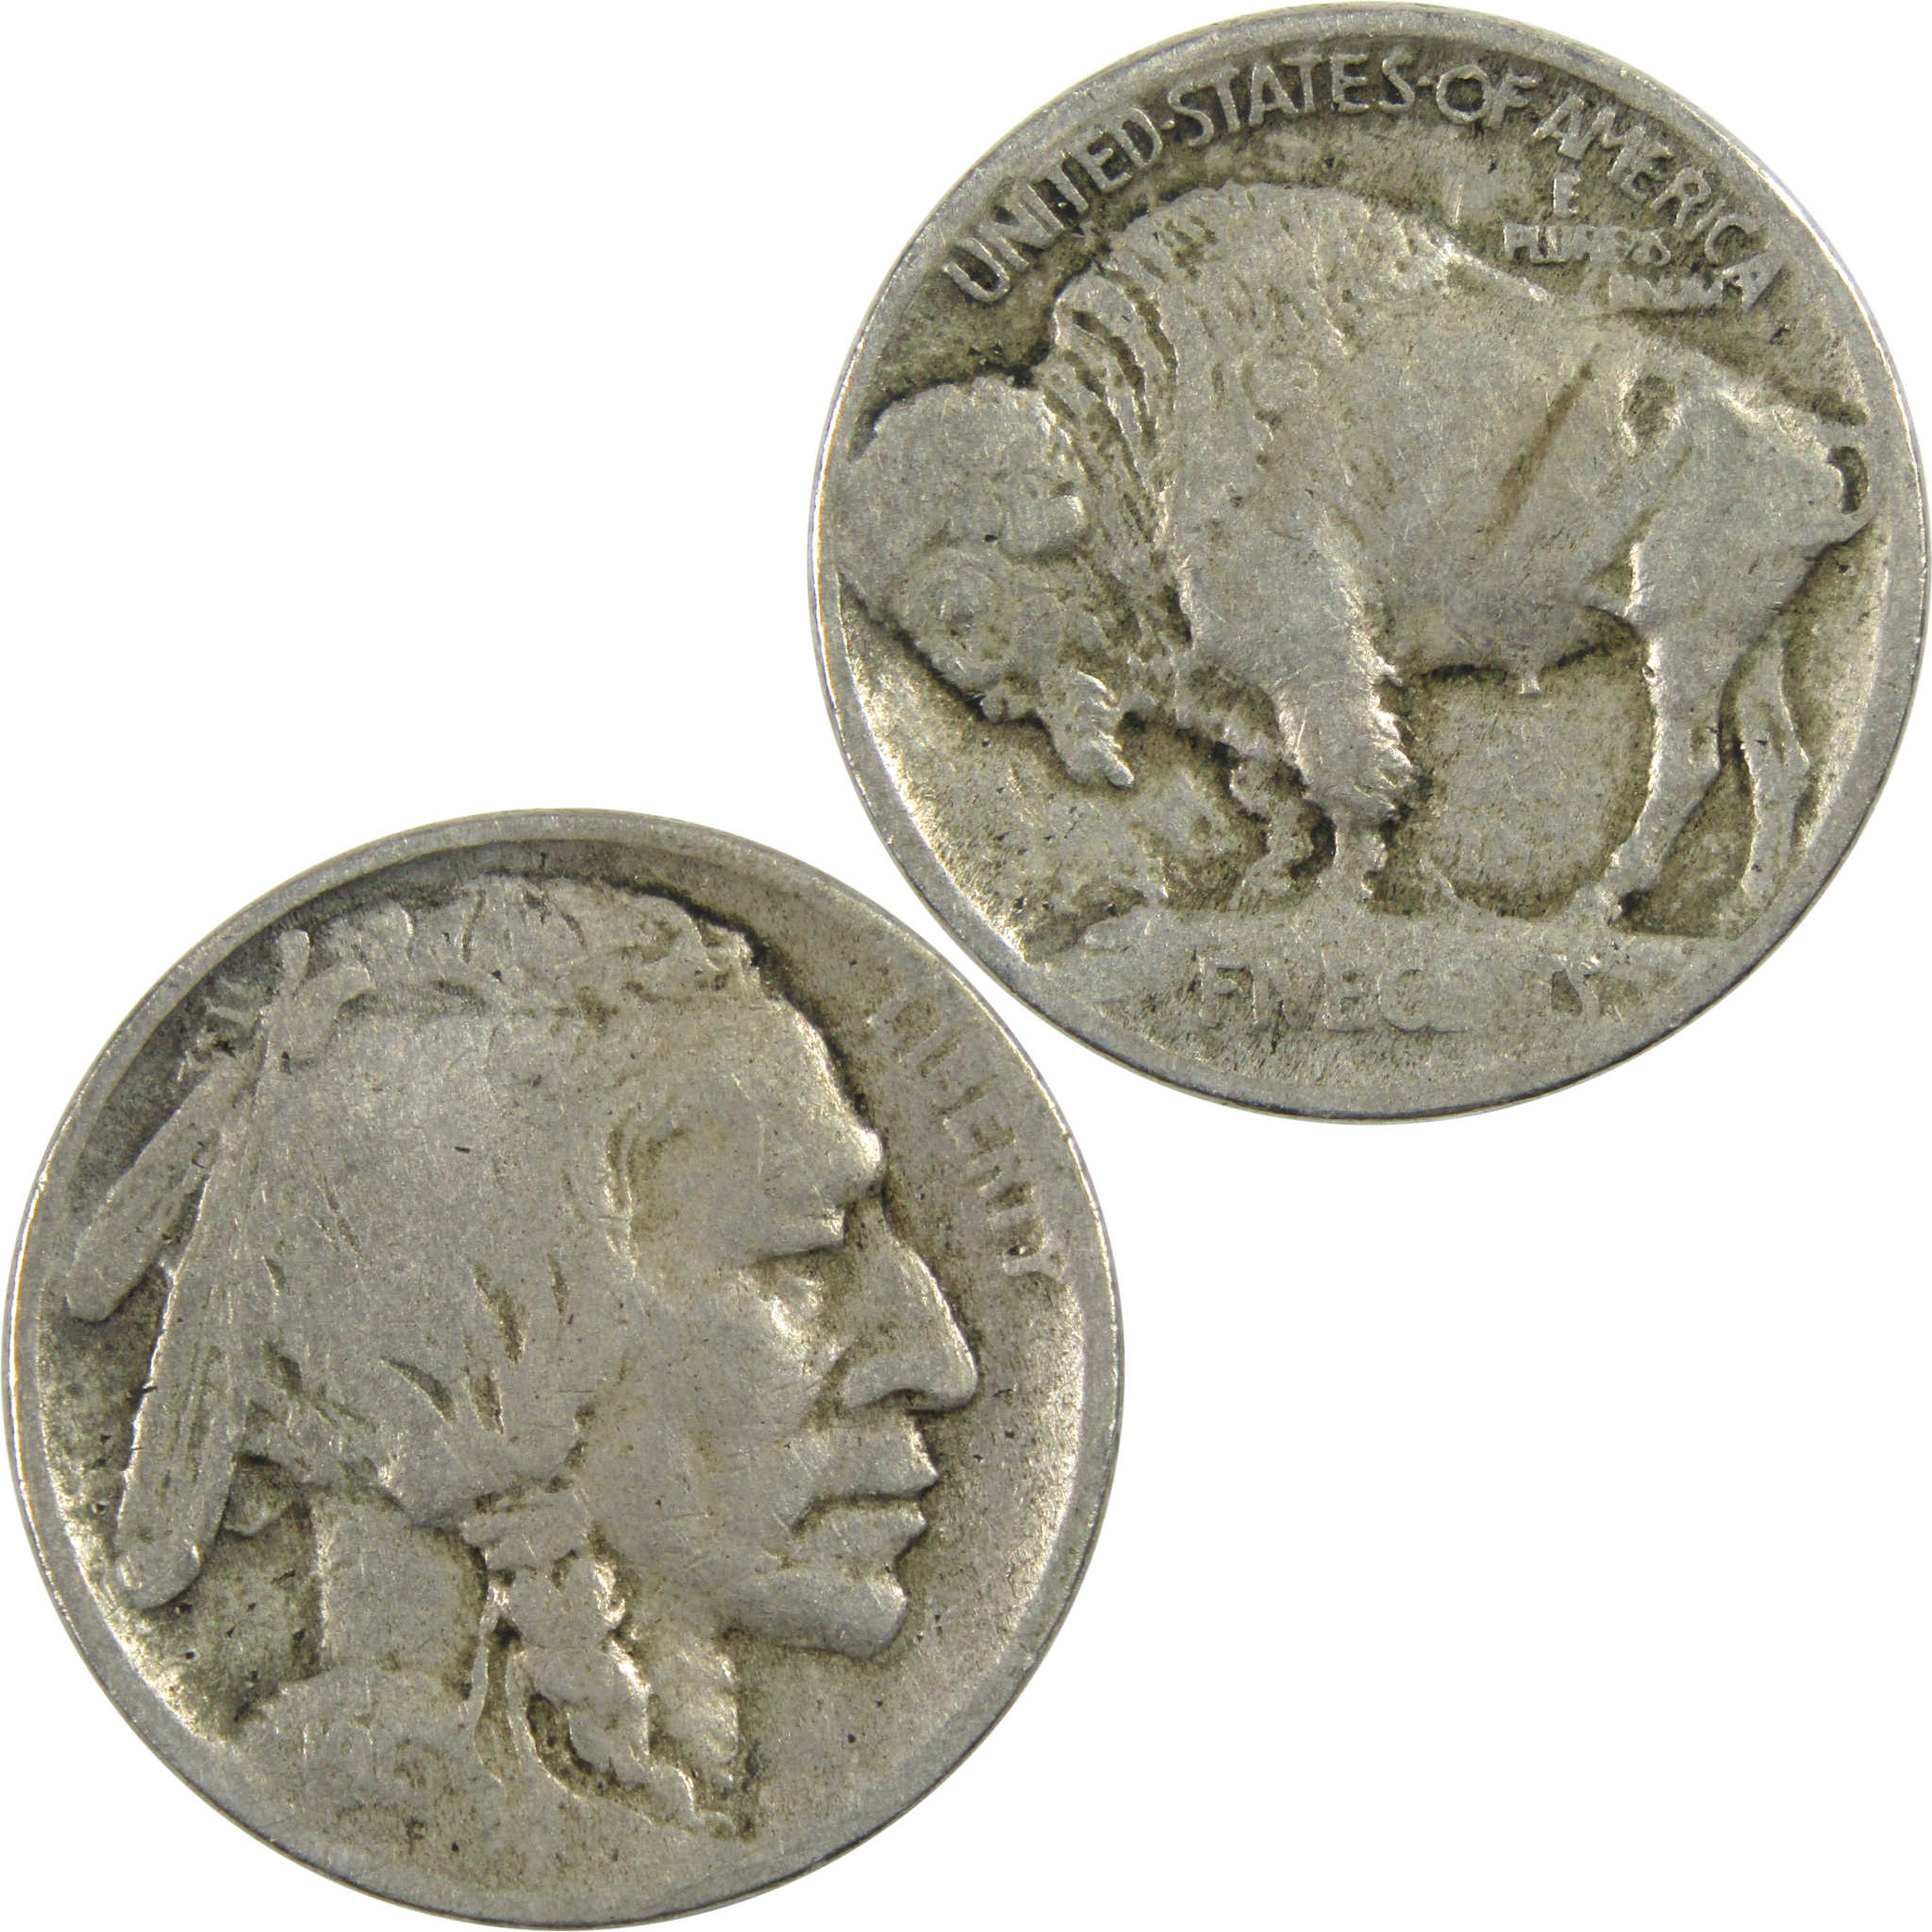 1913 Type 1 Indian Head Buffalo Nickel VG Very Good 5c Coin SKU:I12993